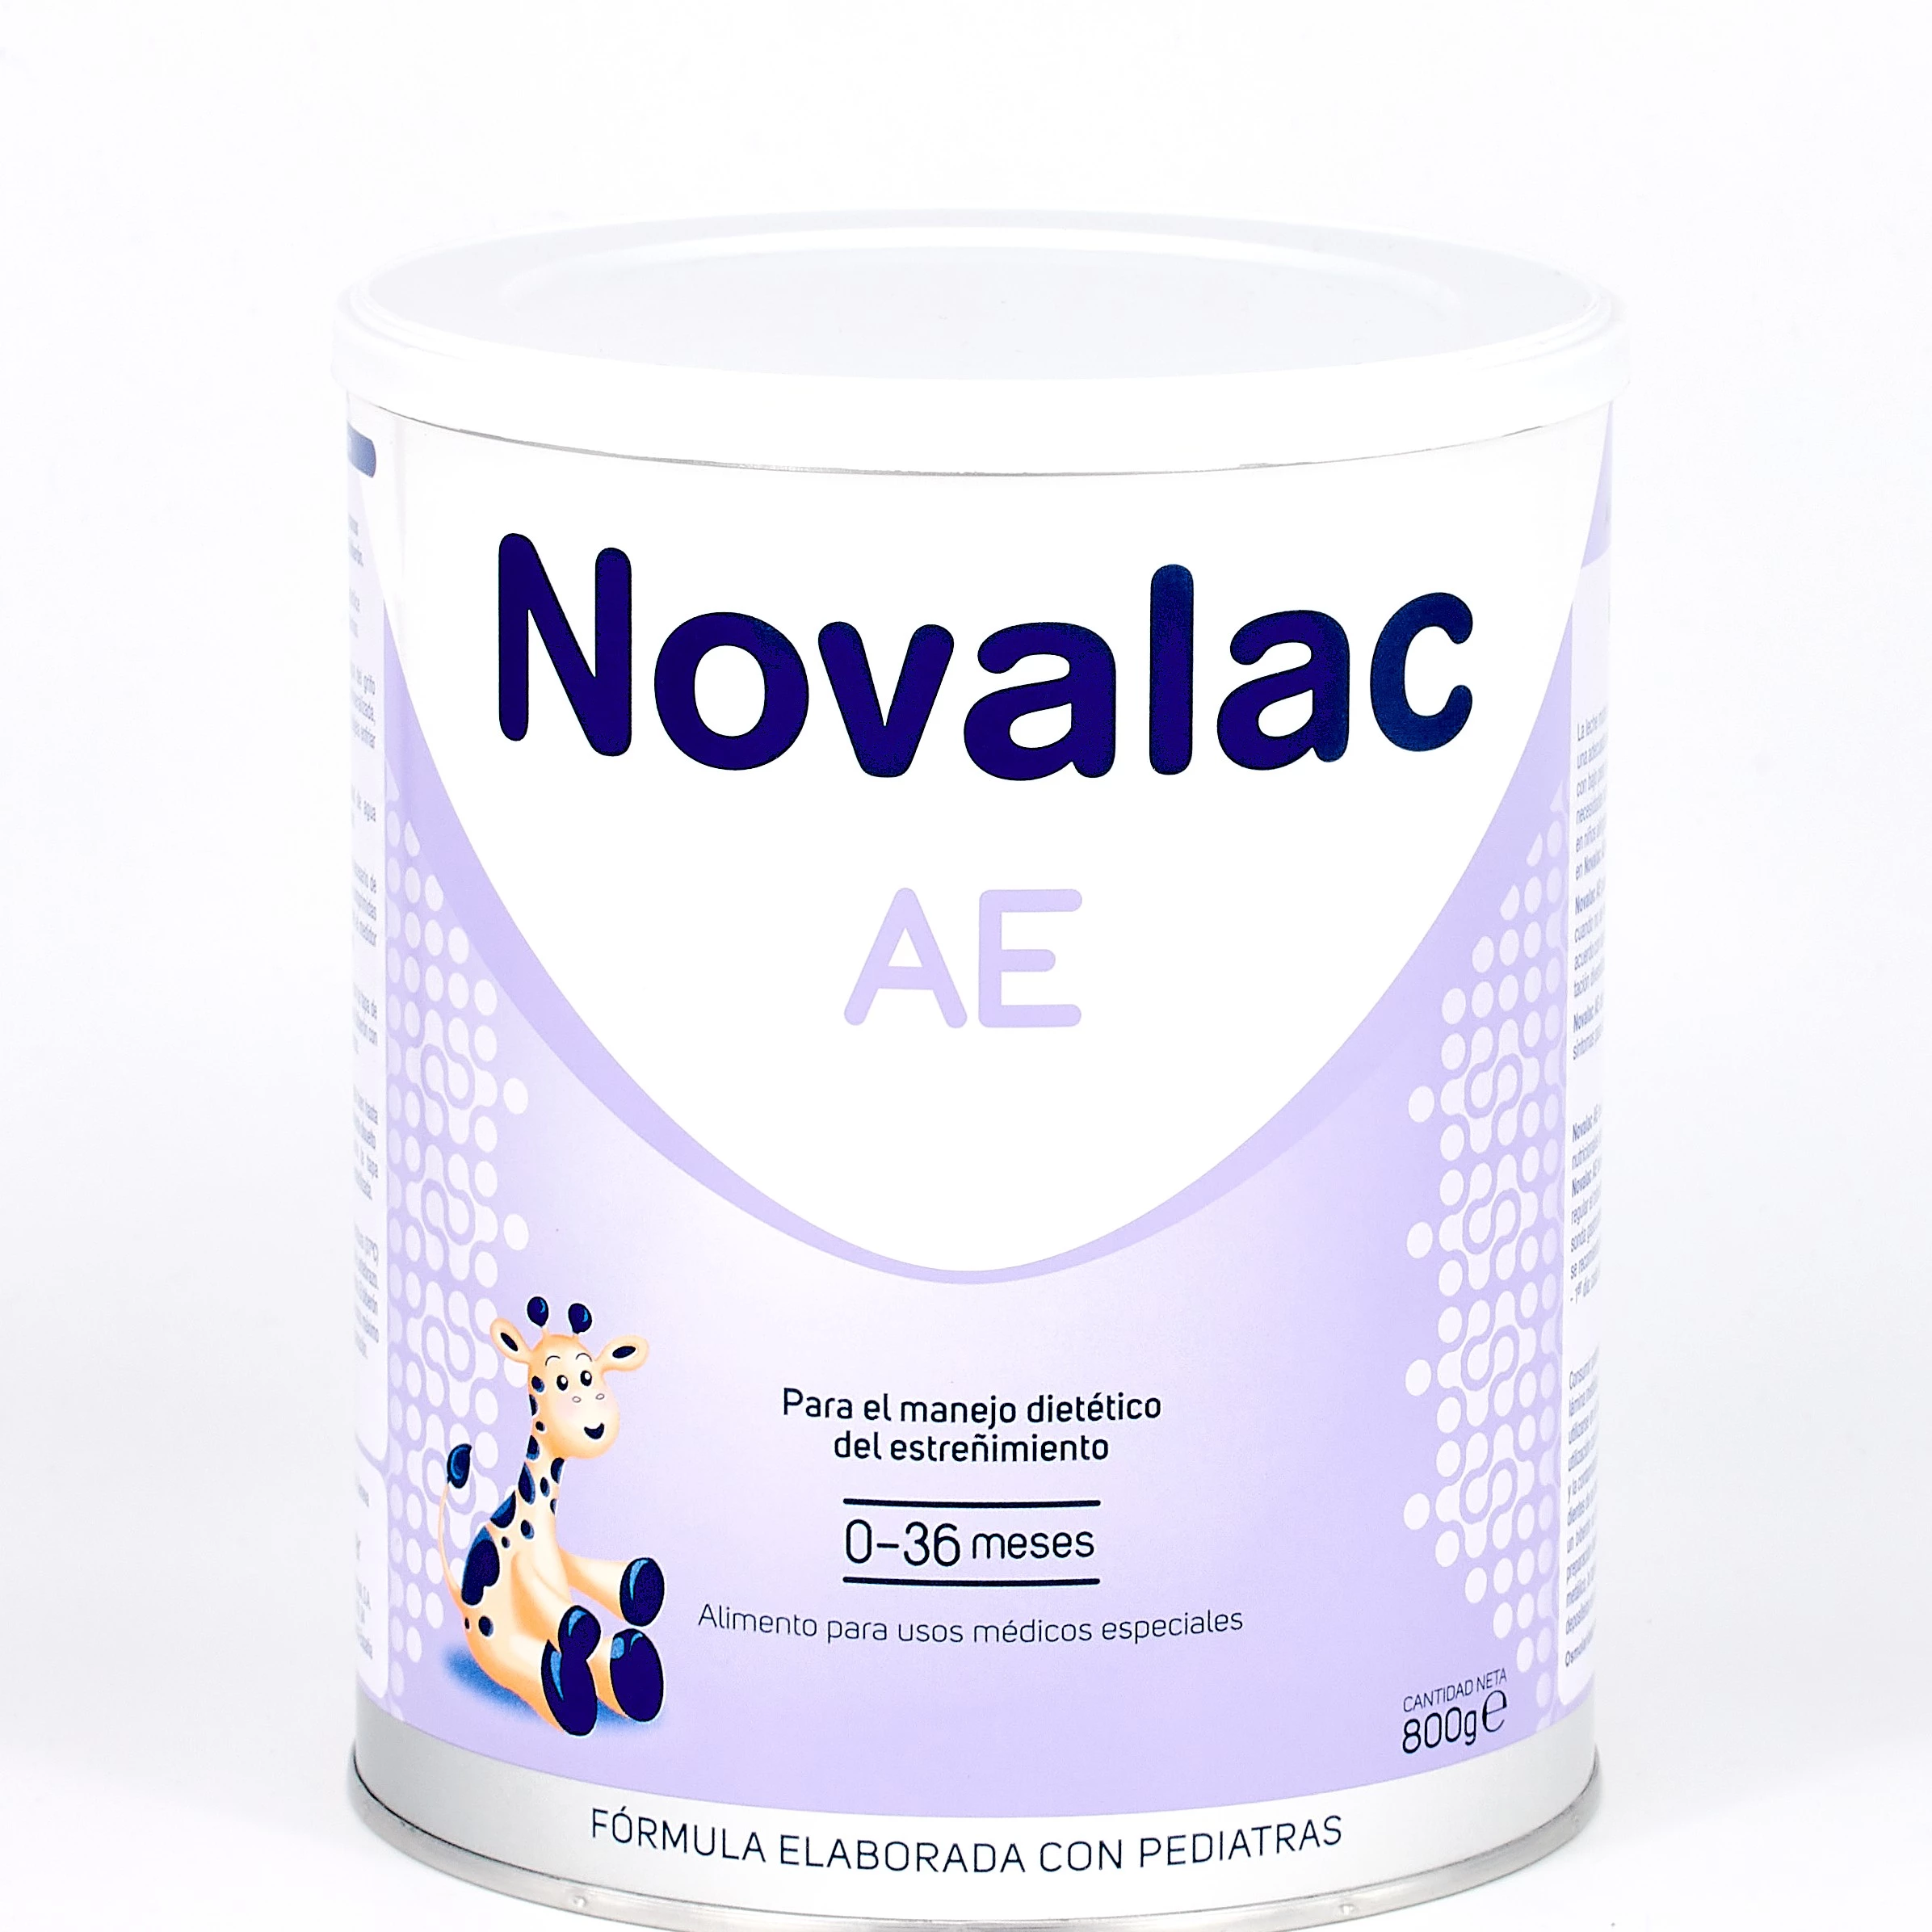 Novalac AE, 800 g.